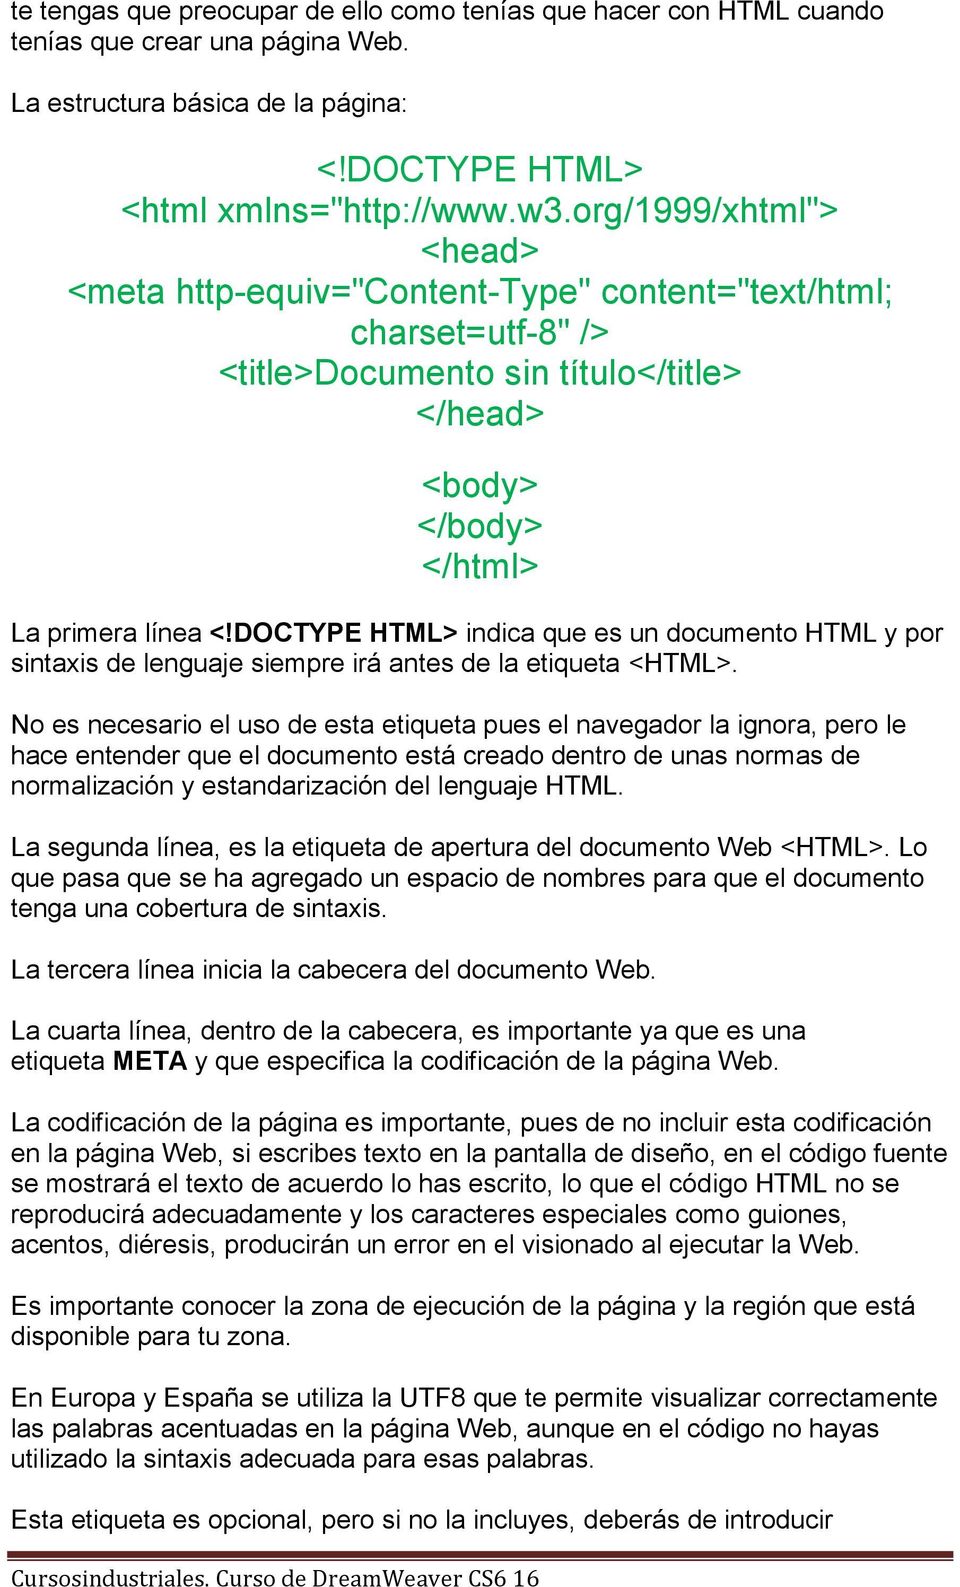 DOCTYPE HTML> indica que es un documento HTML y por sintaxis de lenguaje siempre irá antes de la etiqueta <HTML>.